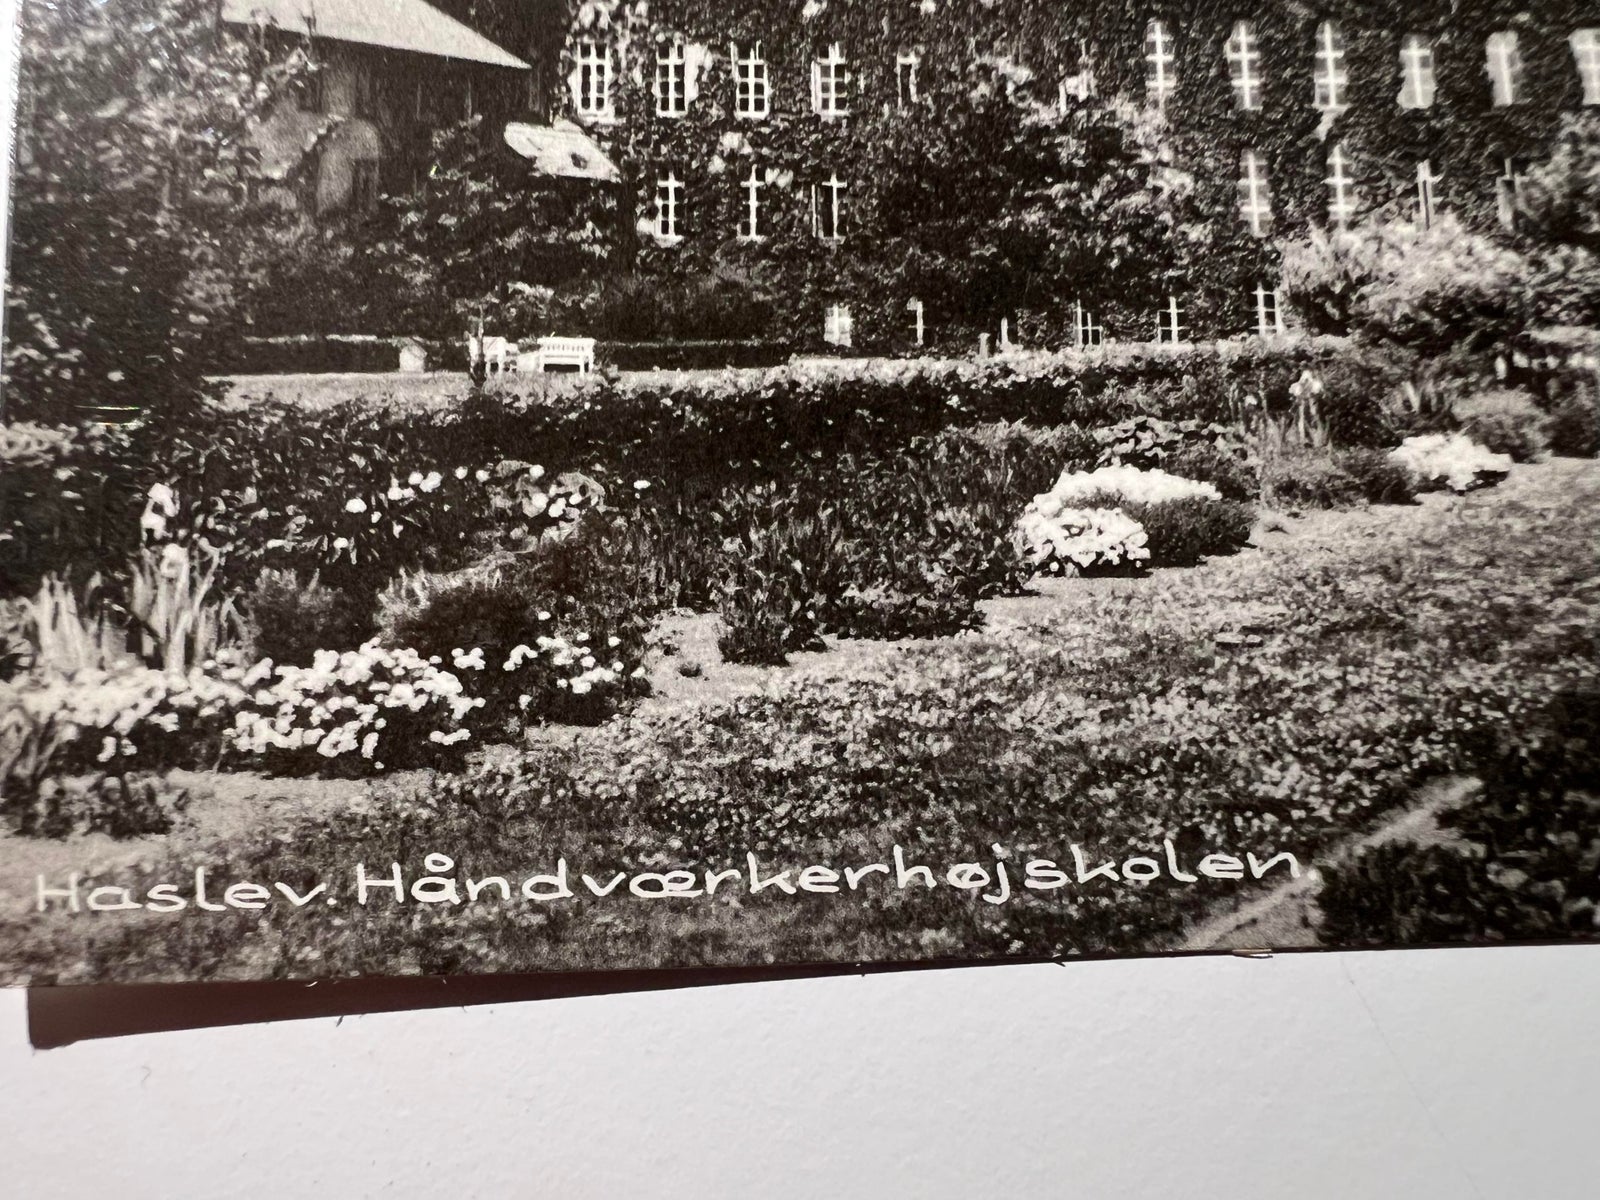 Postkort, Haslev Håndværkerhøjskole (Nr. 31)